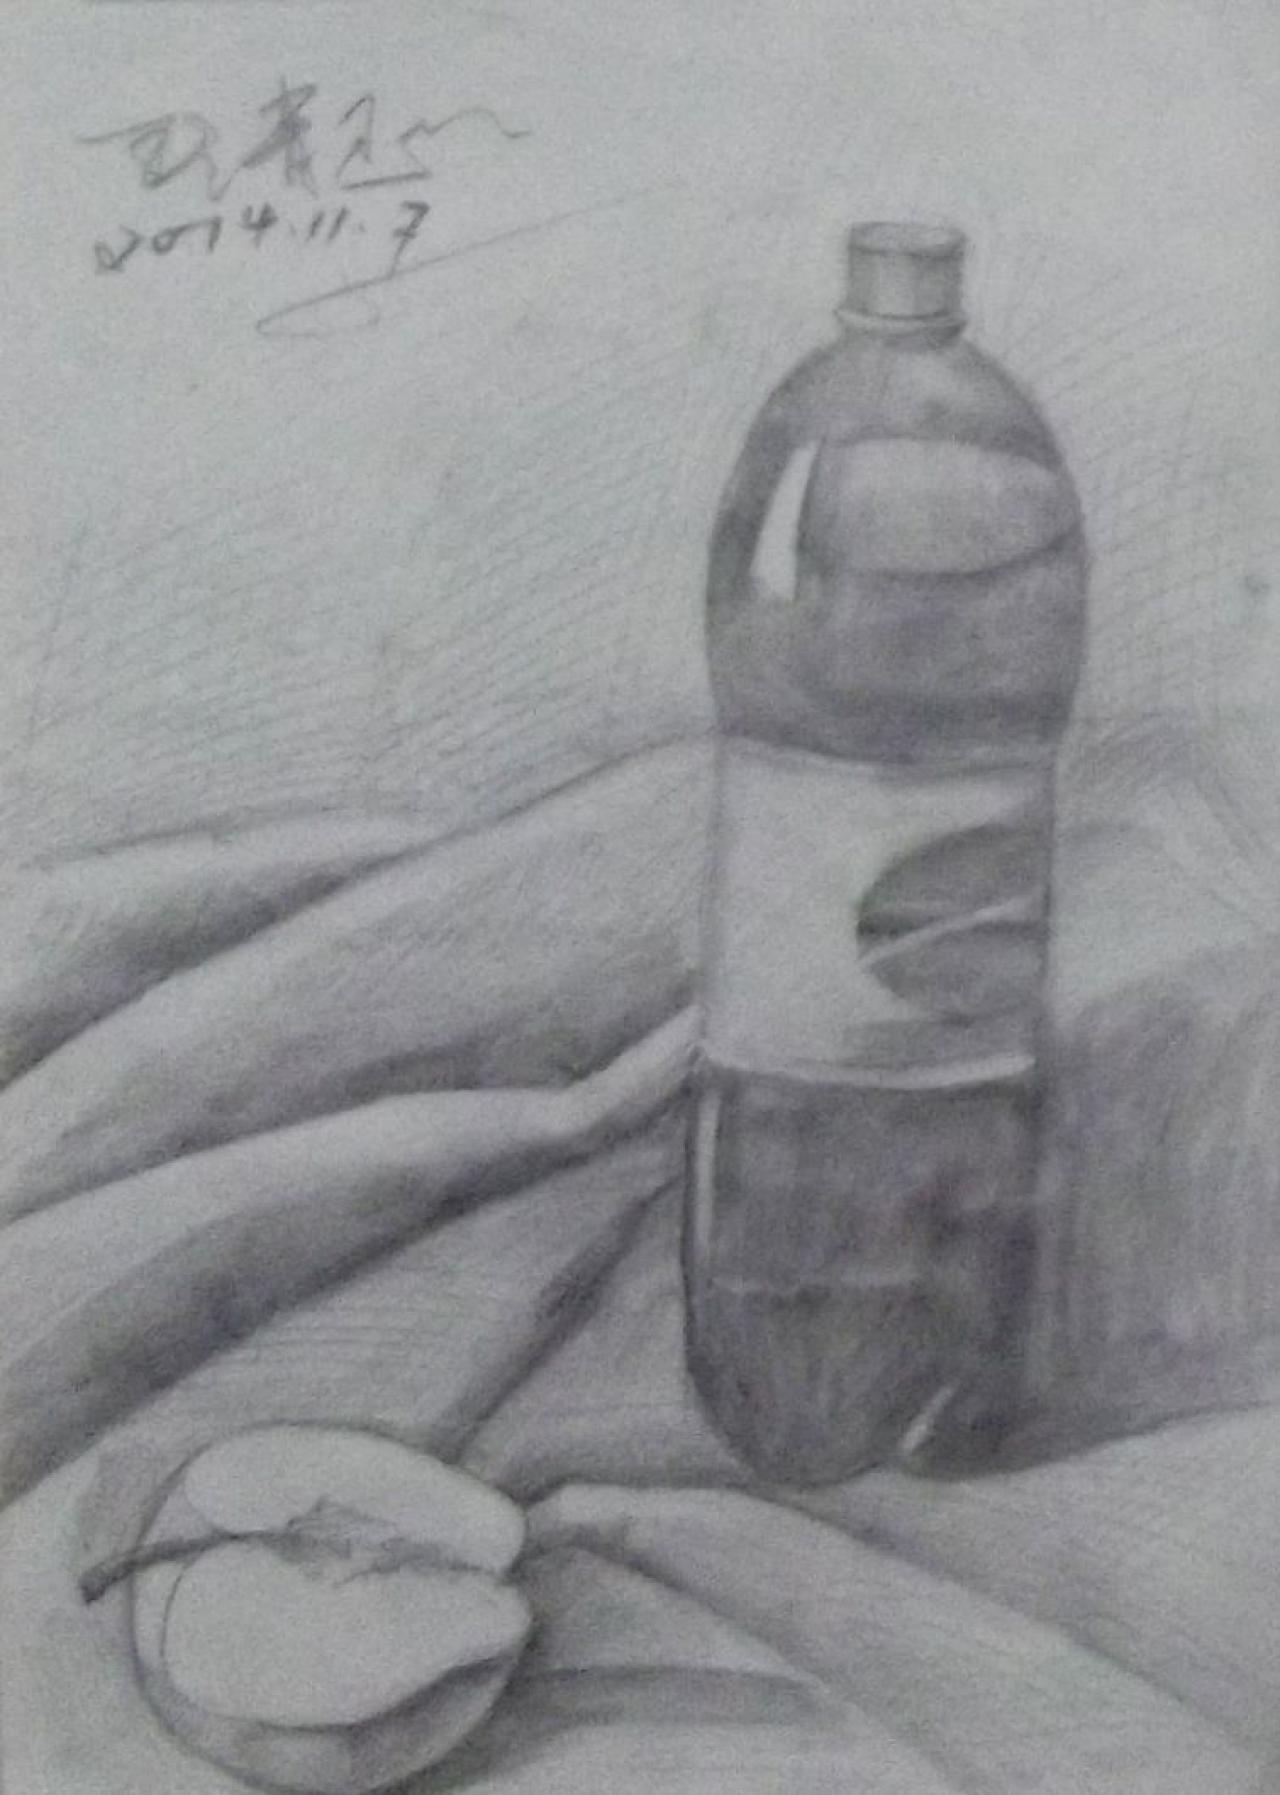 可乐瓶、半个苹果等静物素描 王清玉画